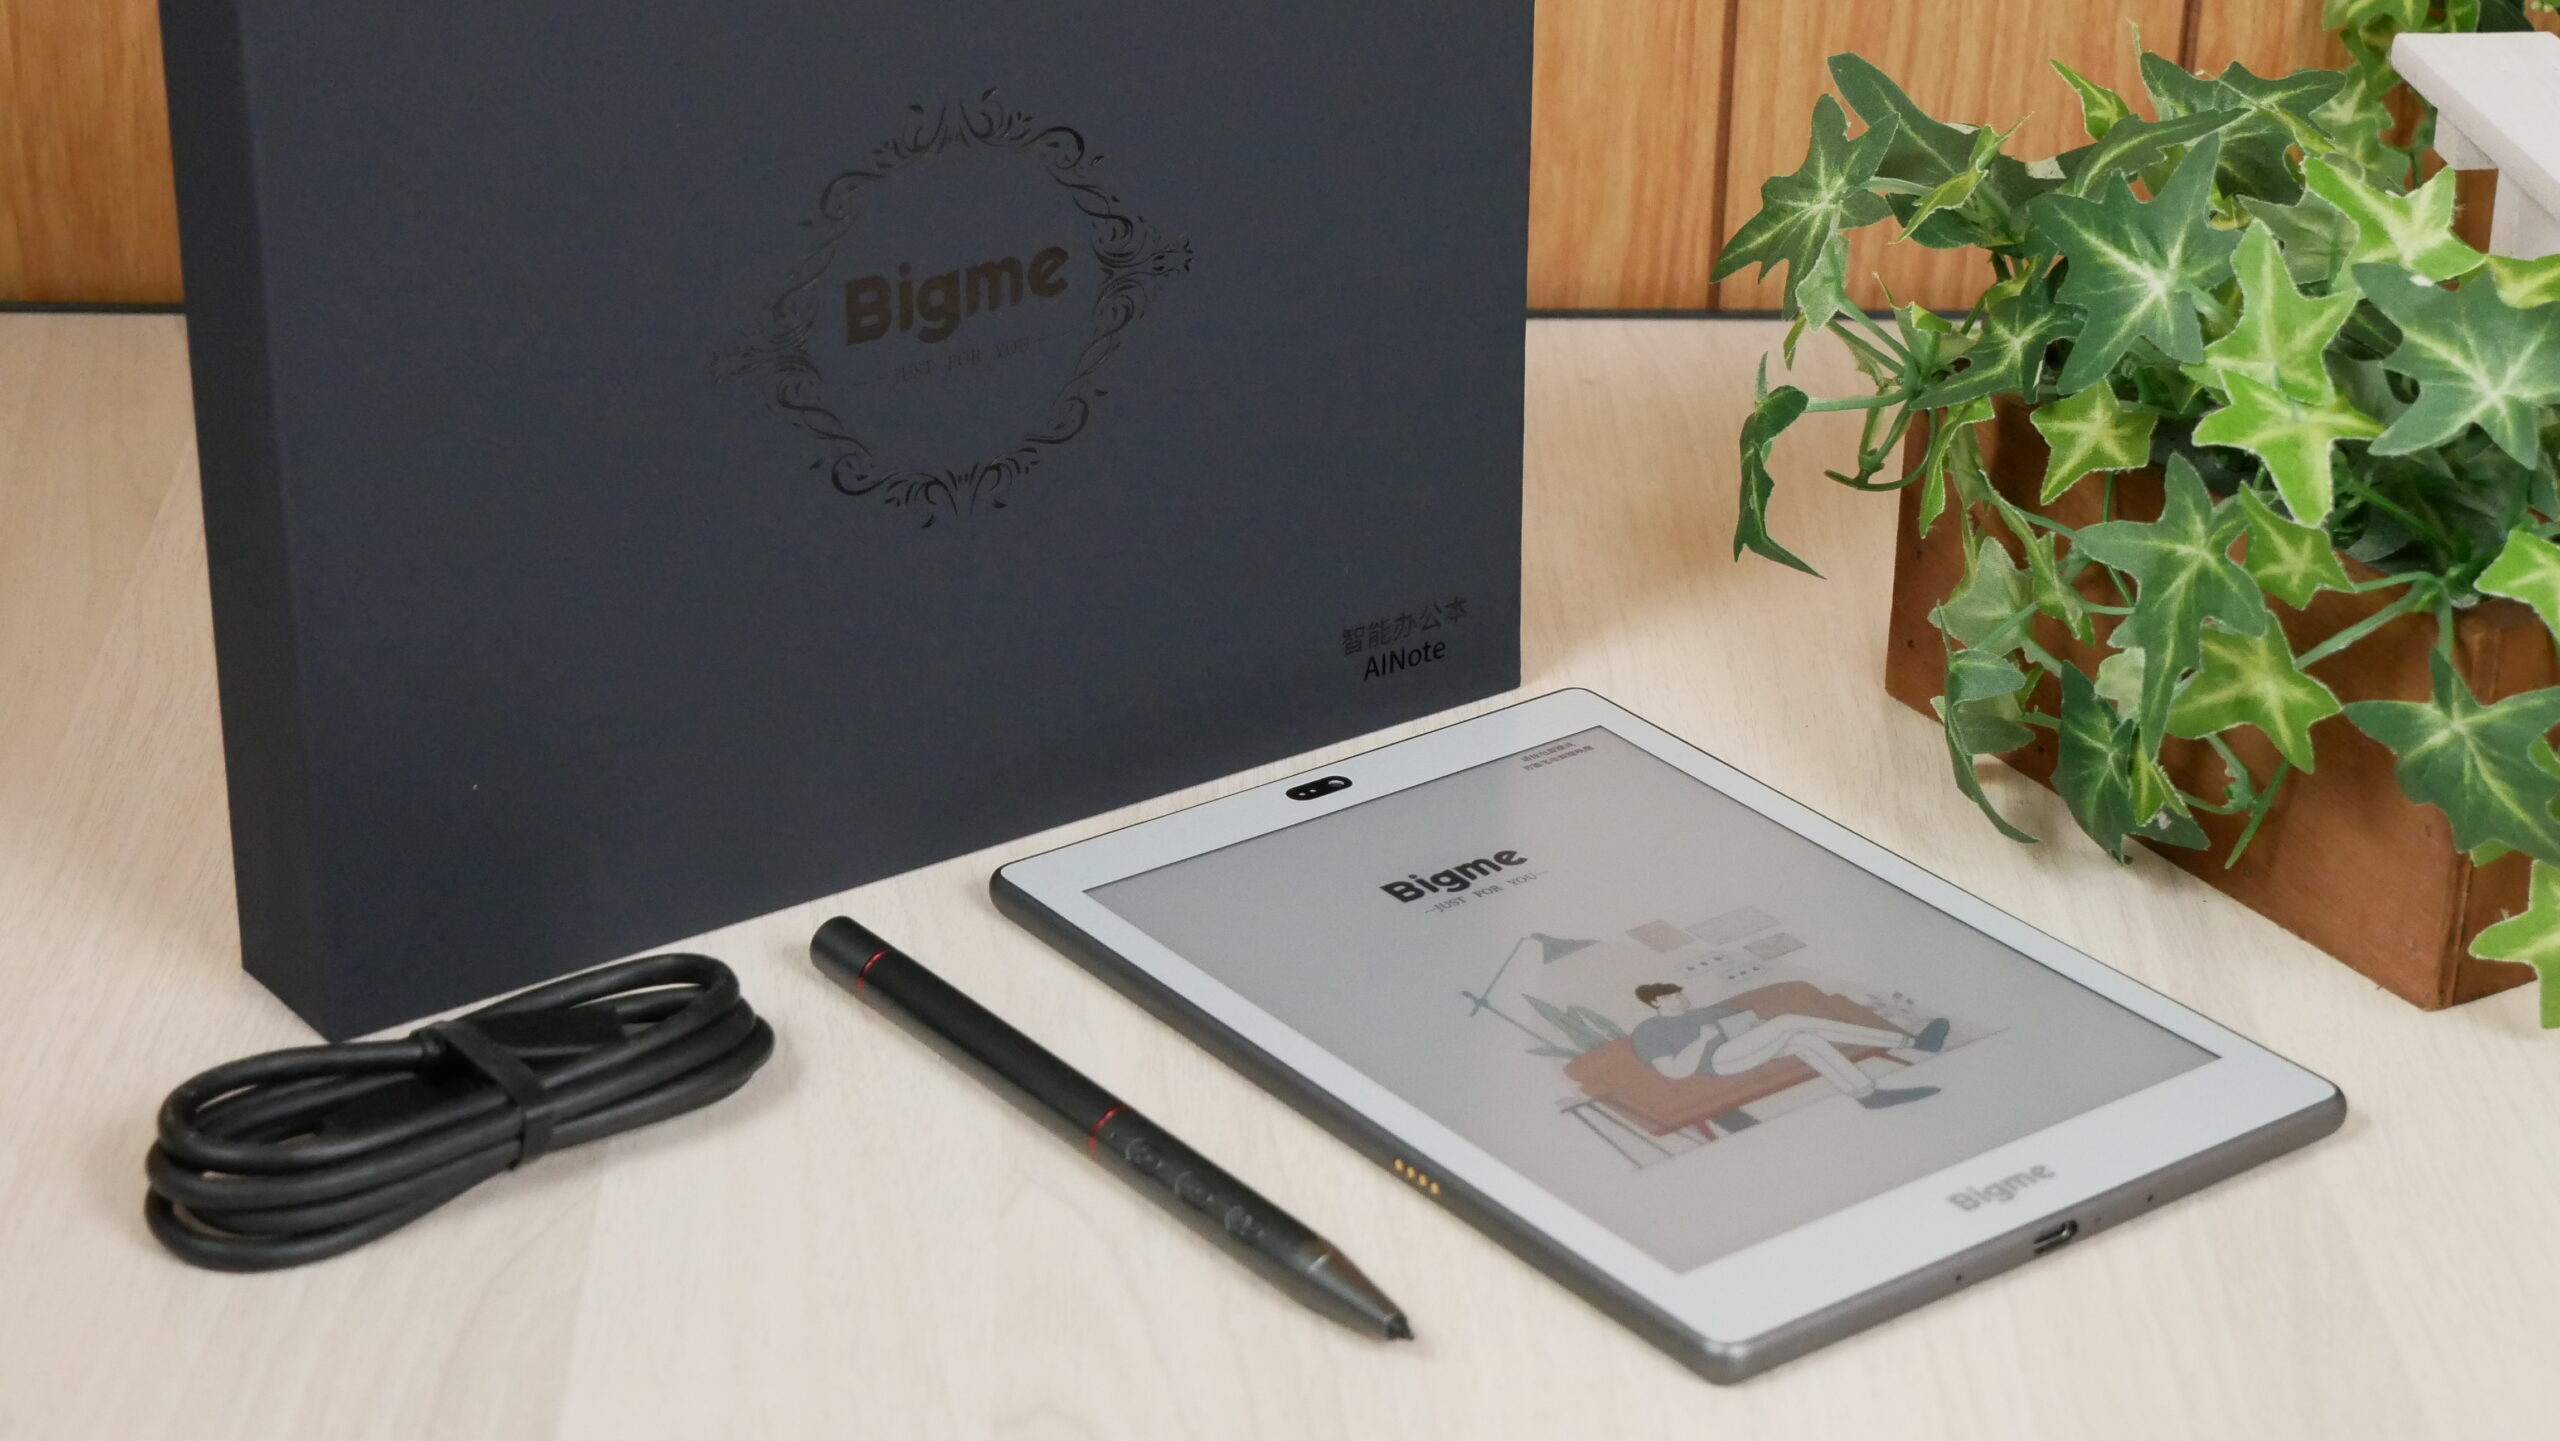 Bigme S6: E-book con display E-Ink a colori e ChatGPT integrato a 500 dollari